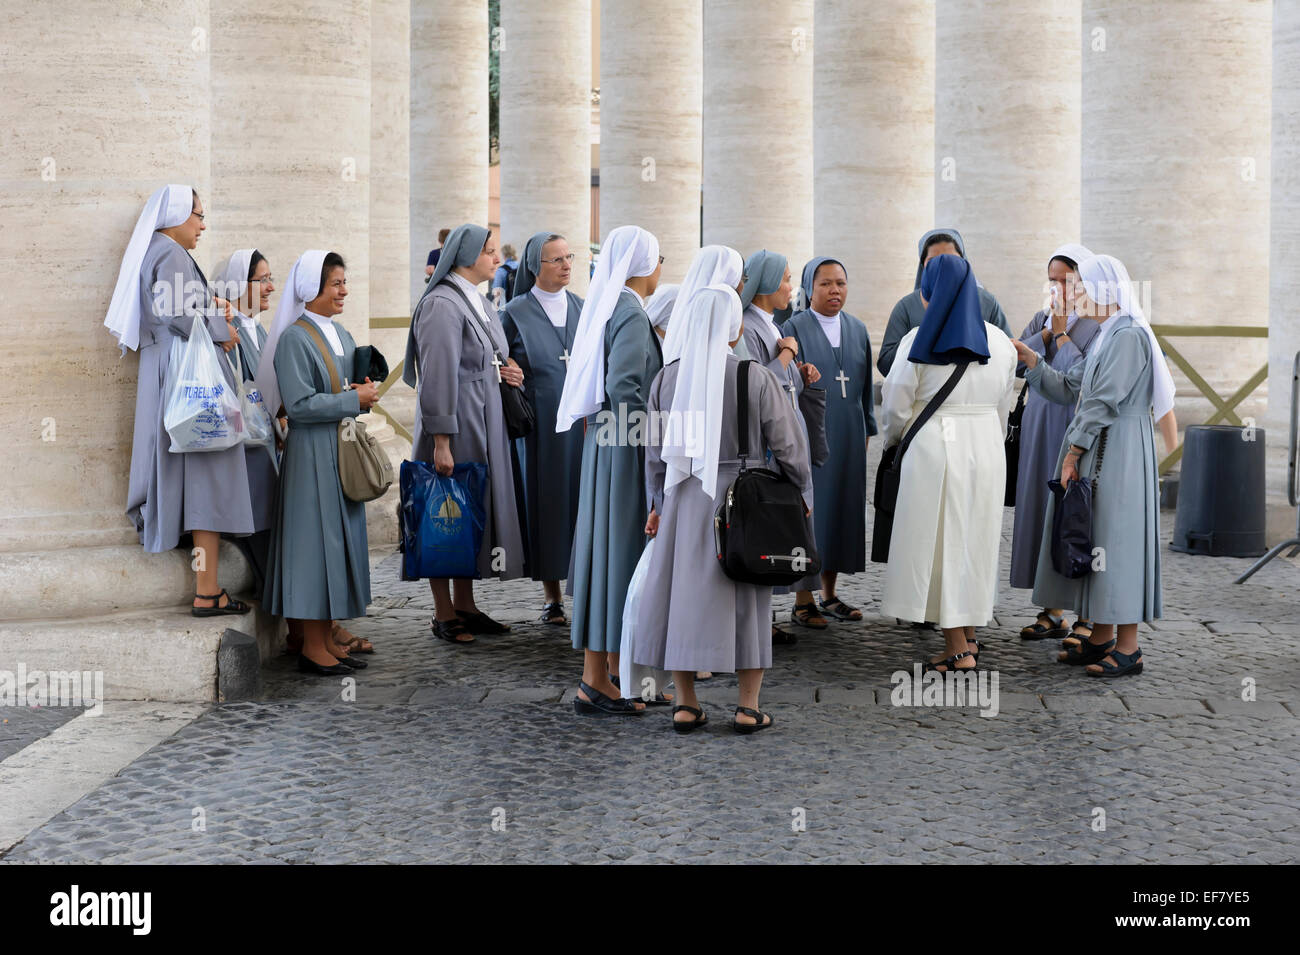 Eine Gruppe von Nonnen durch die Spalten der Kolonnade in St.-Peter Platzes, Vatikanstadt, Rom, Italien gesammelt. Stockfoto